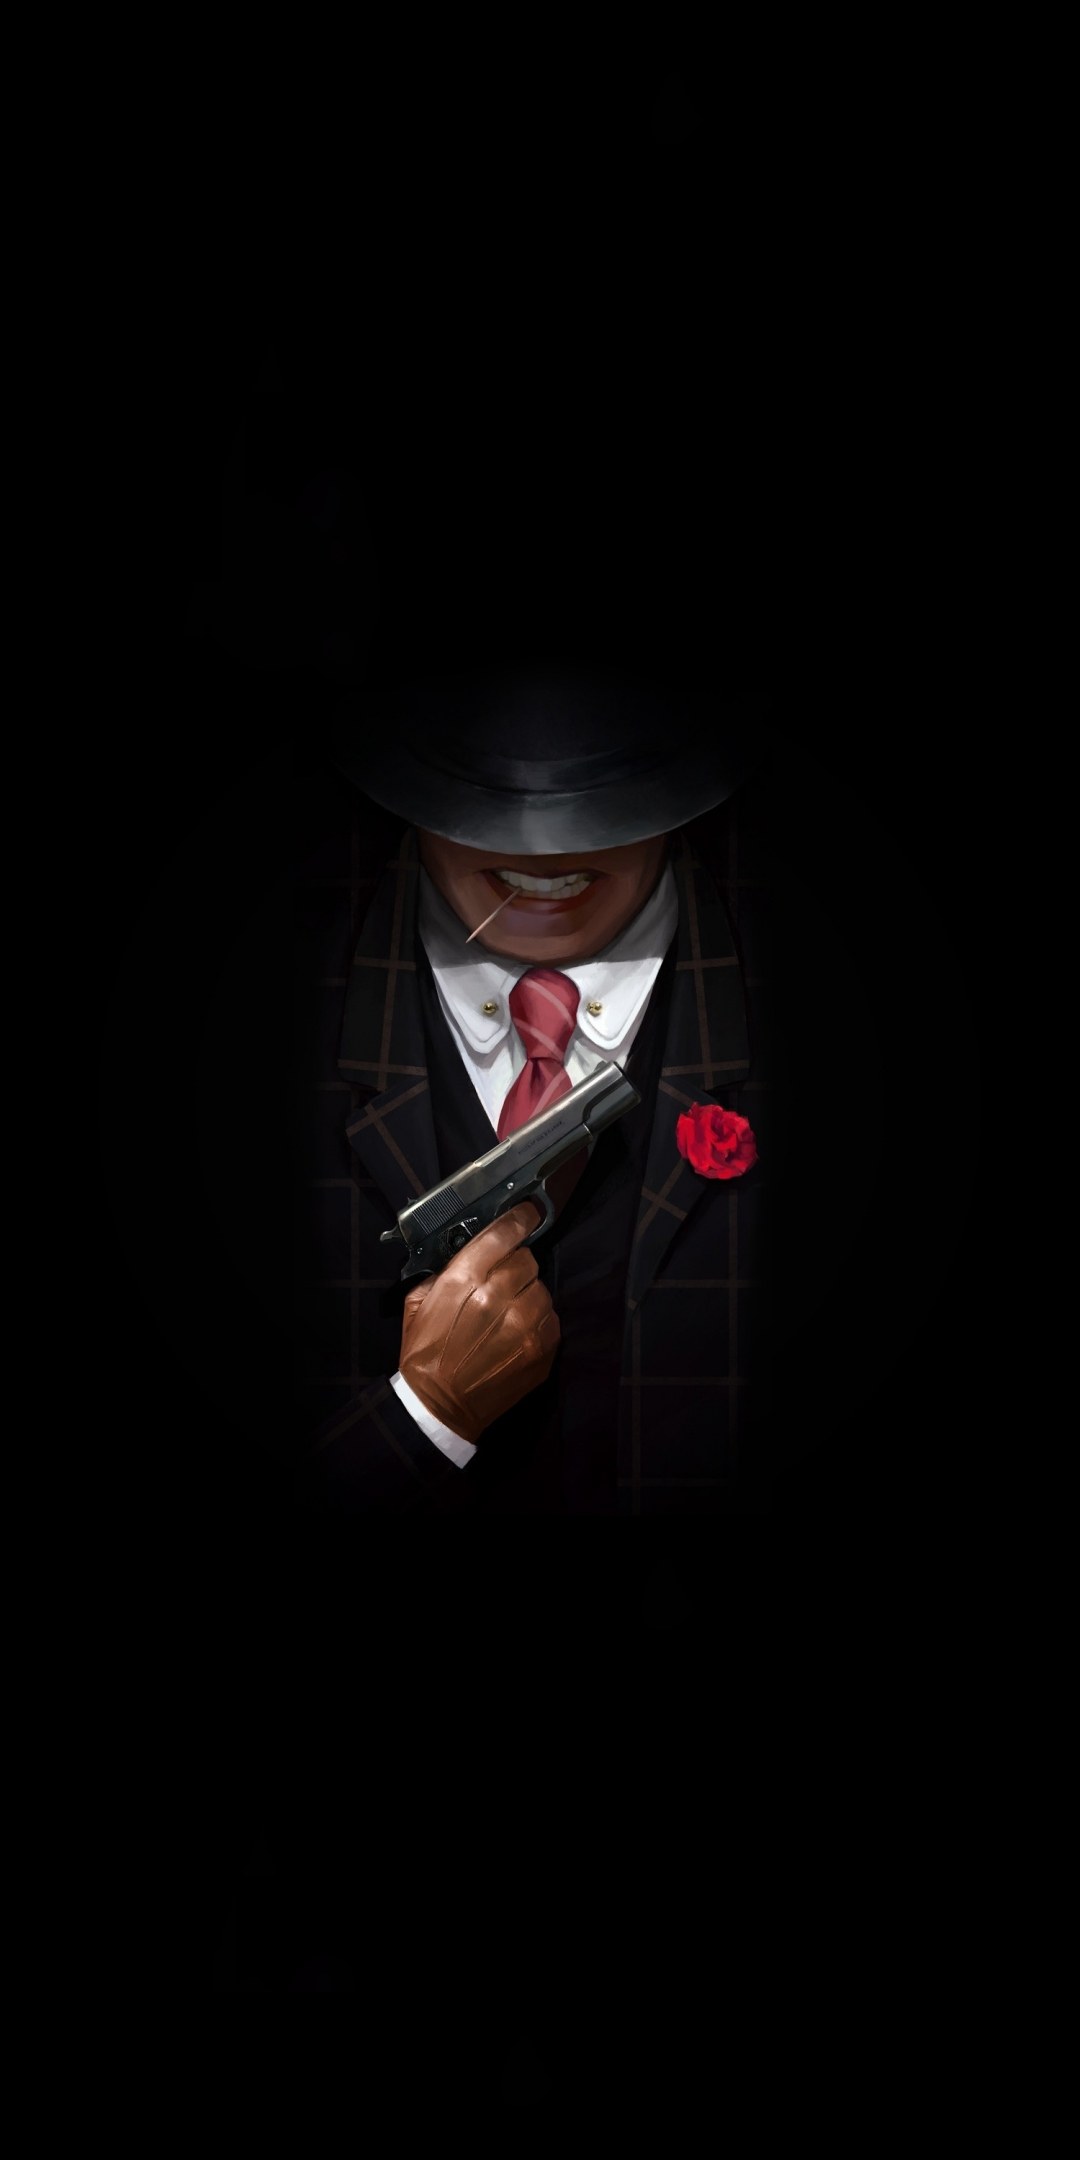 Download Wallpaper 1080x2160 Gangster With Gun Minimal Artwork Honor